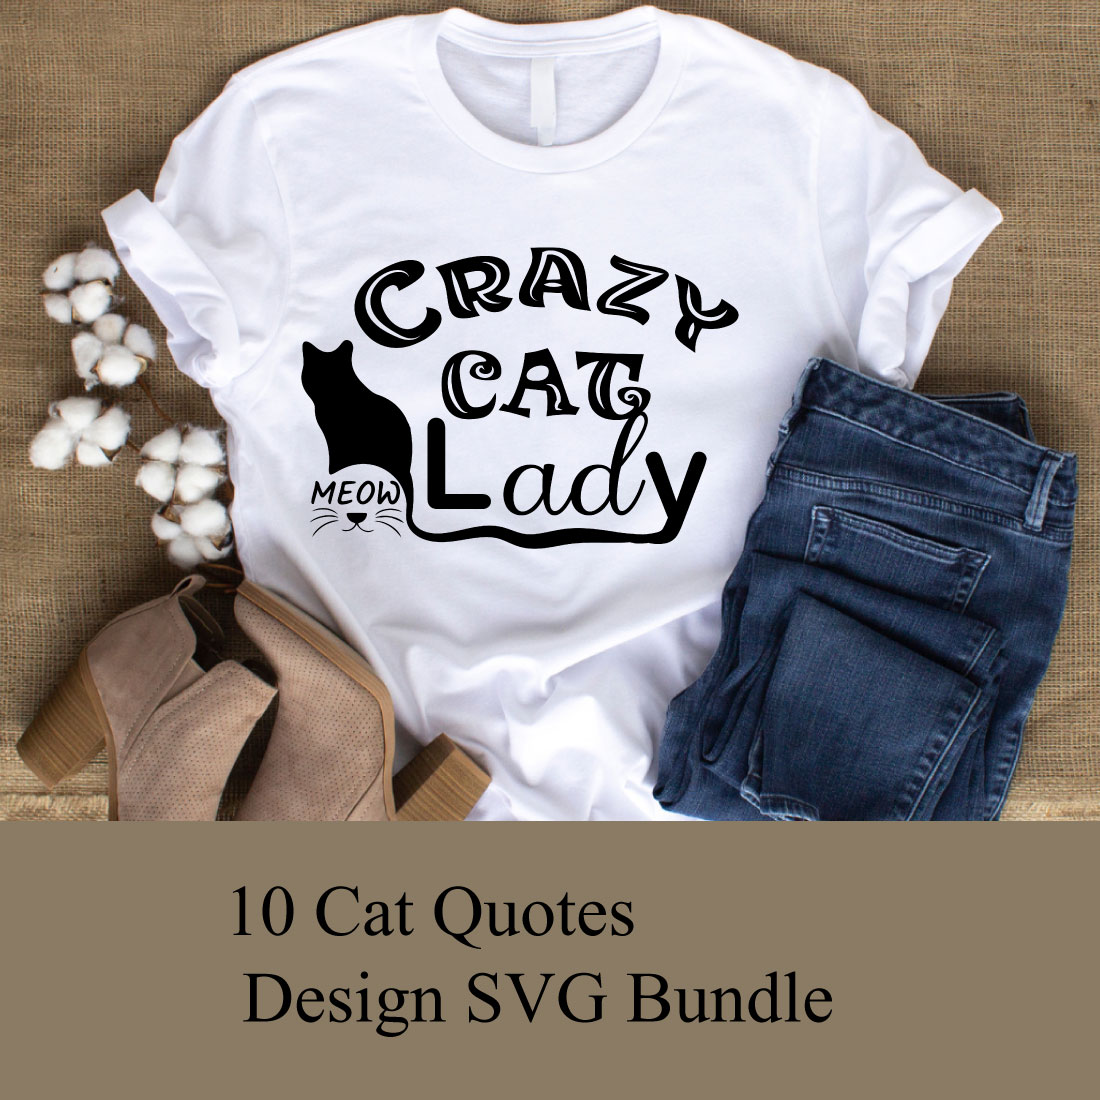 T-shirt Cat Quotes Design SVG Bundle cover image.